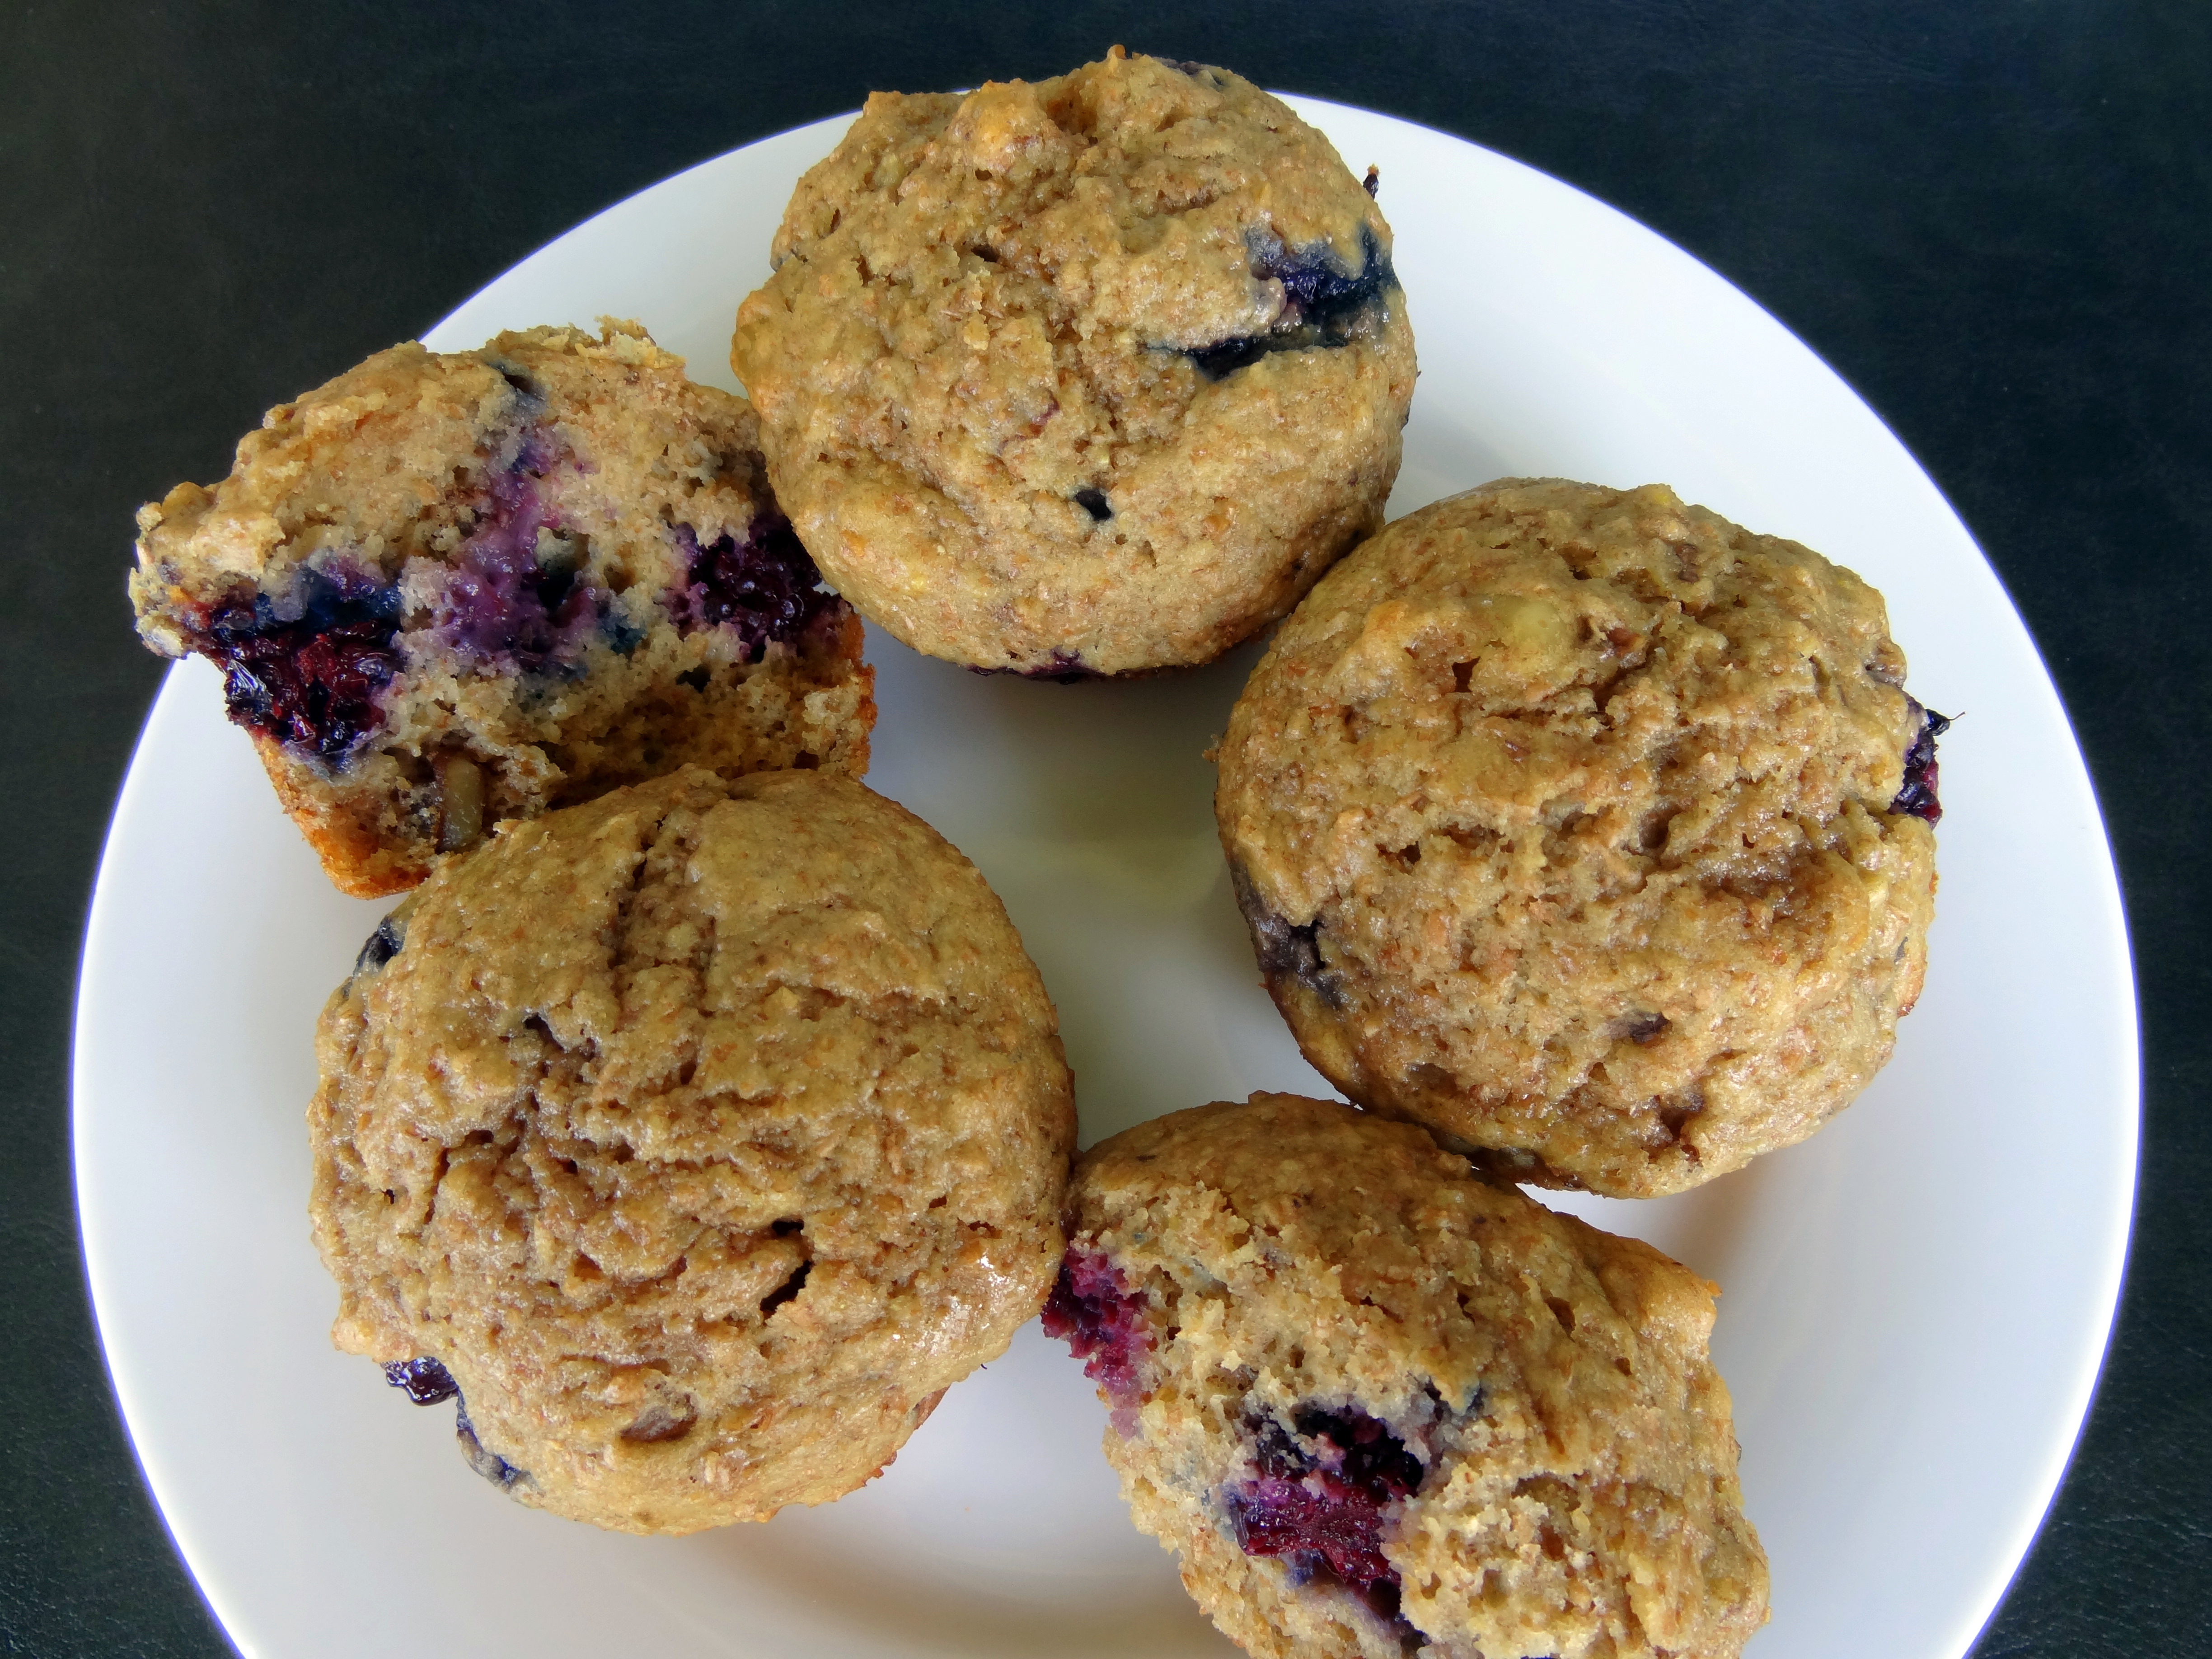 Blackberry walnut bran muffins